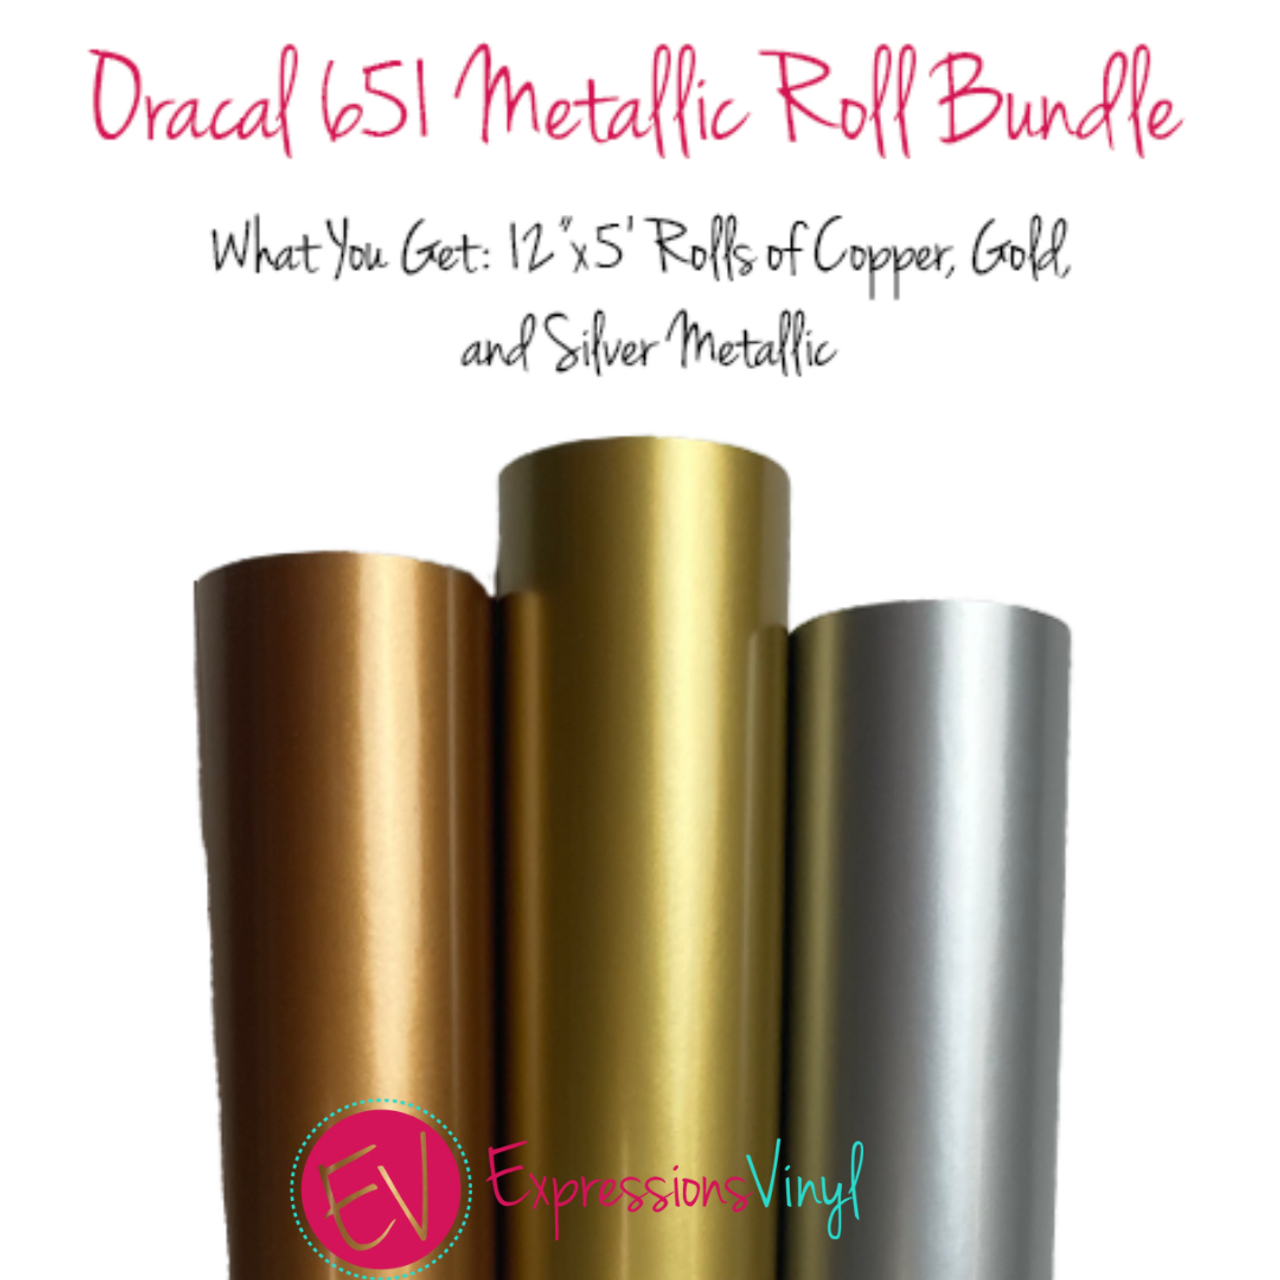 Oracal 651 Metallic 5ft. Roll Bundle